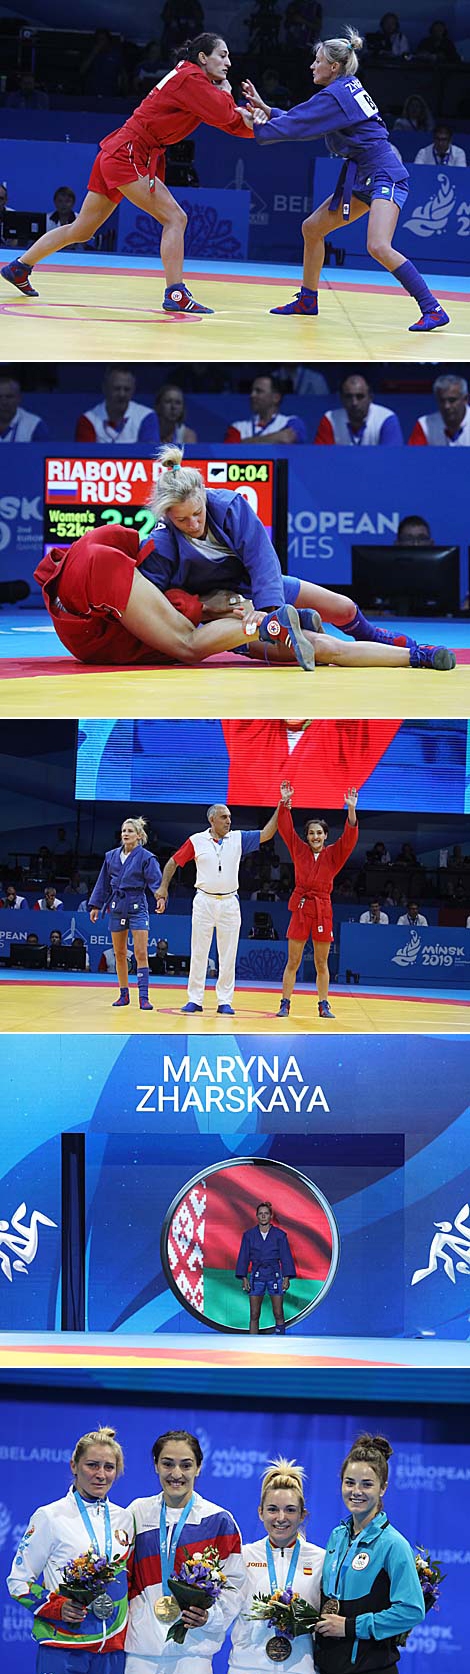 Belarus' Maryna Zharskaya has won a silver medal in women’s 52kg